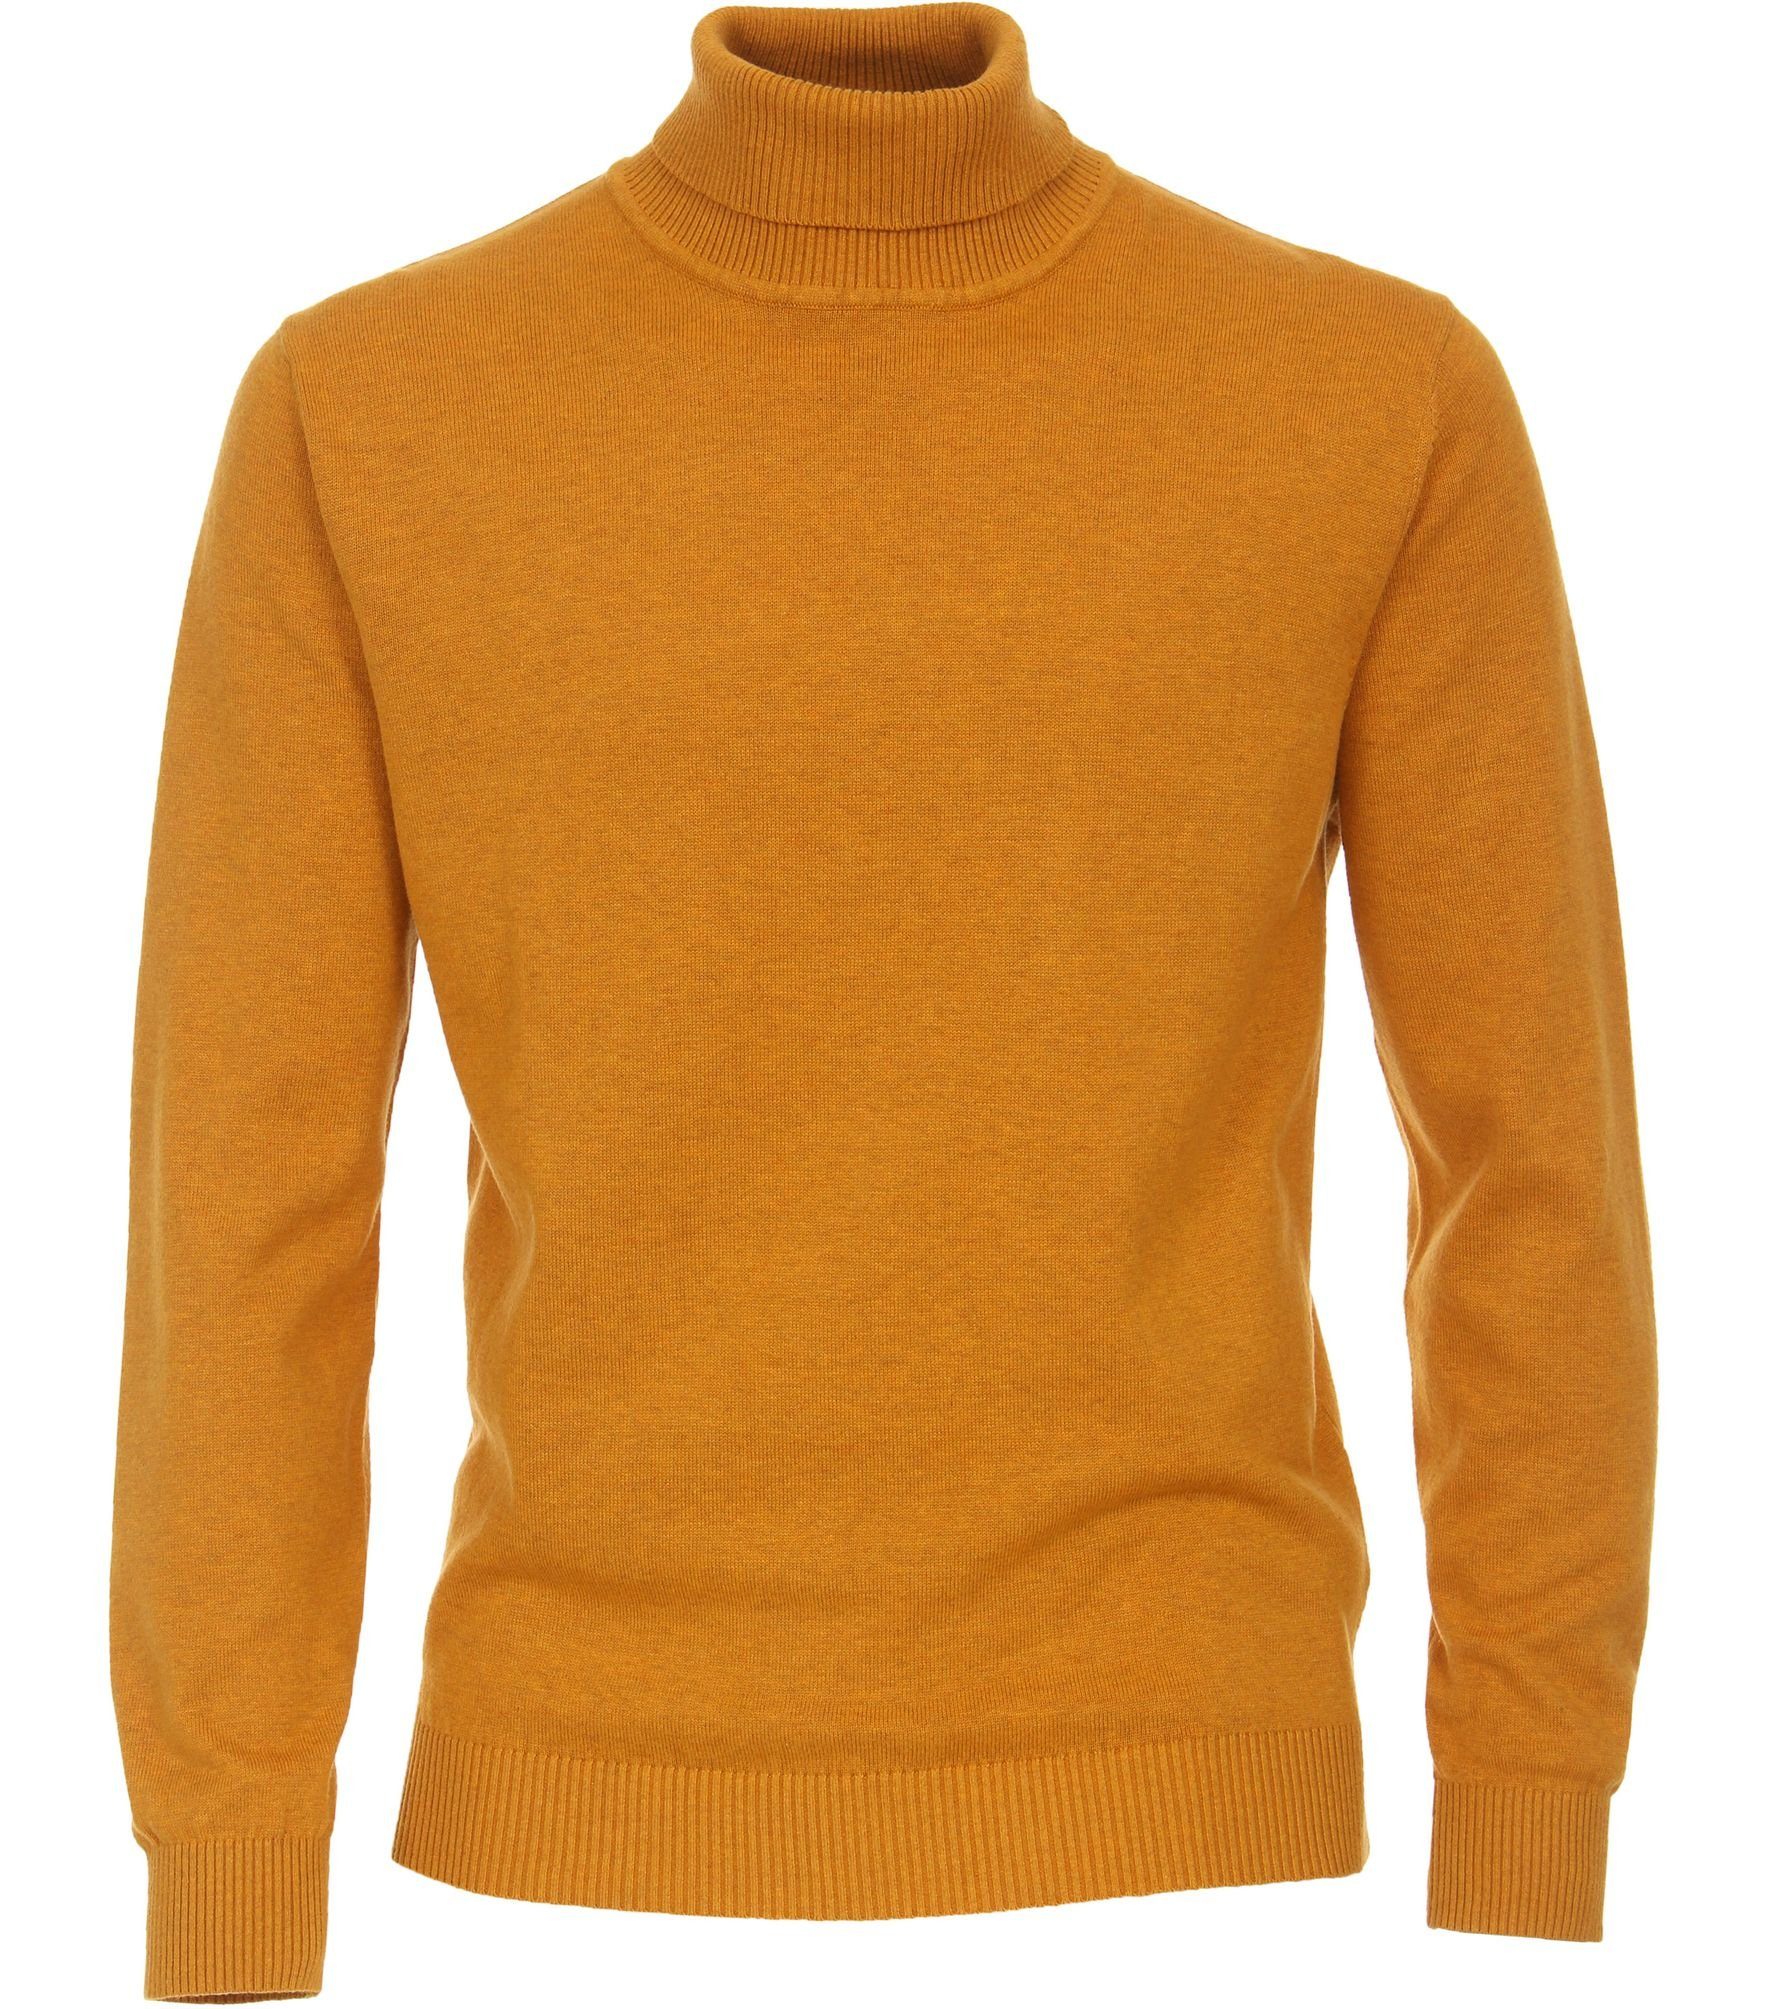 Gelber Herren-Pullover online kaufen | OTTO